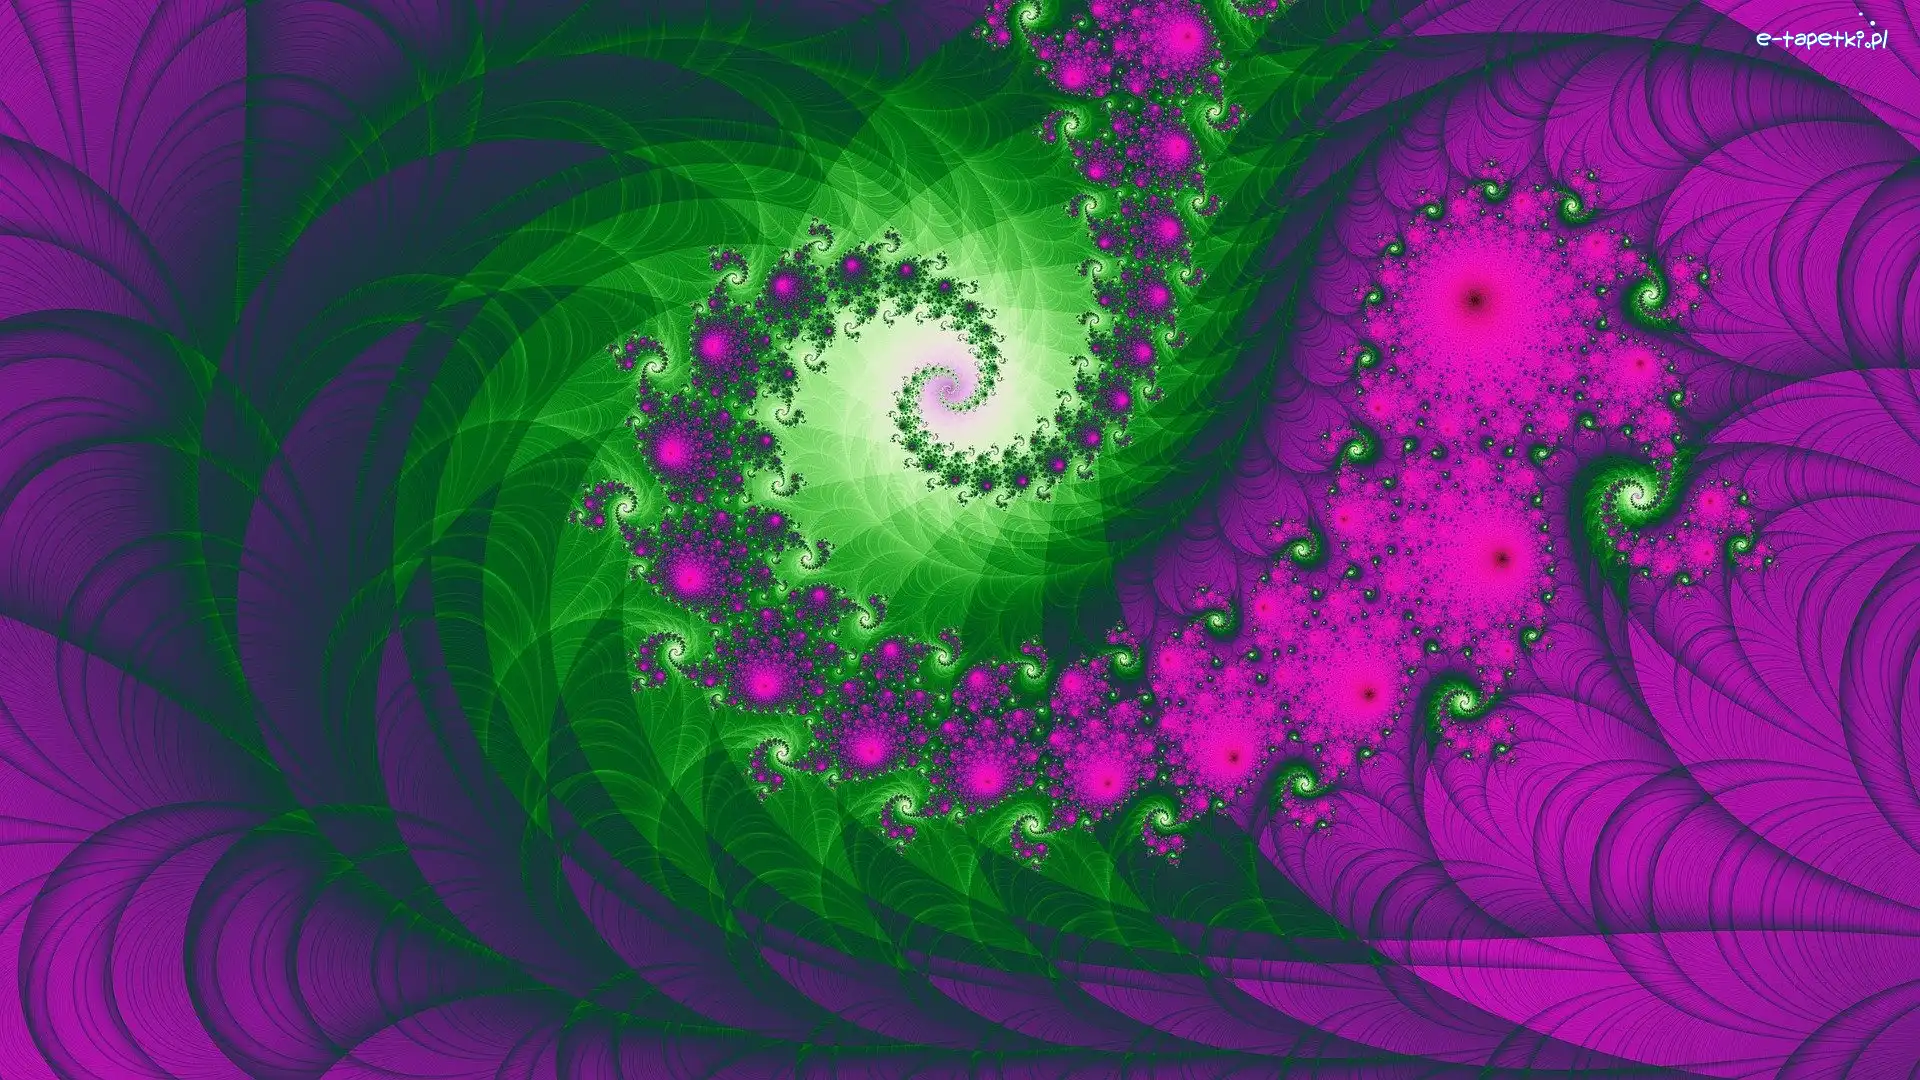 Fioletowo-zielony, Wzory, Fraktal, Spirale